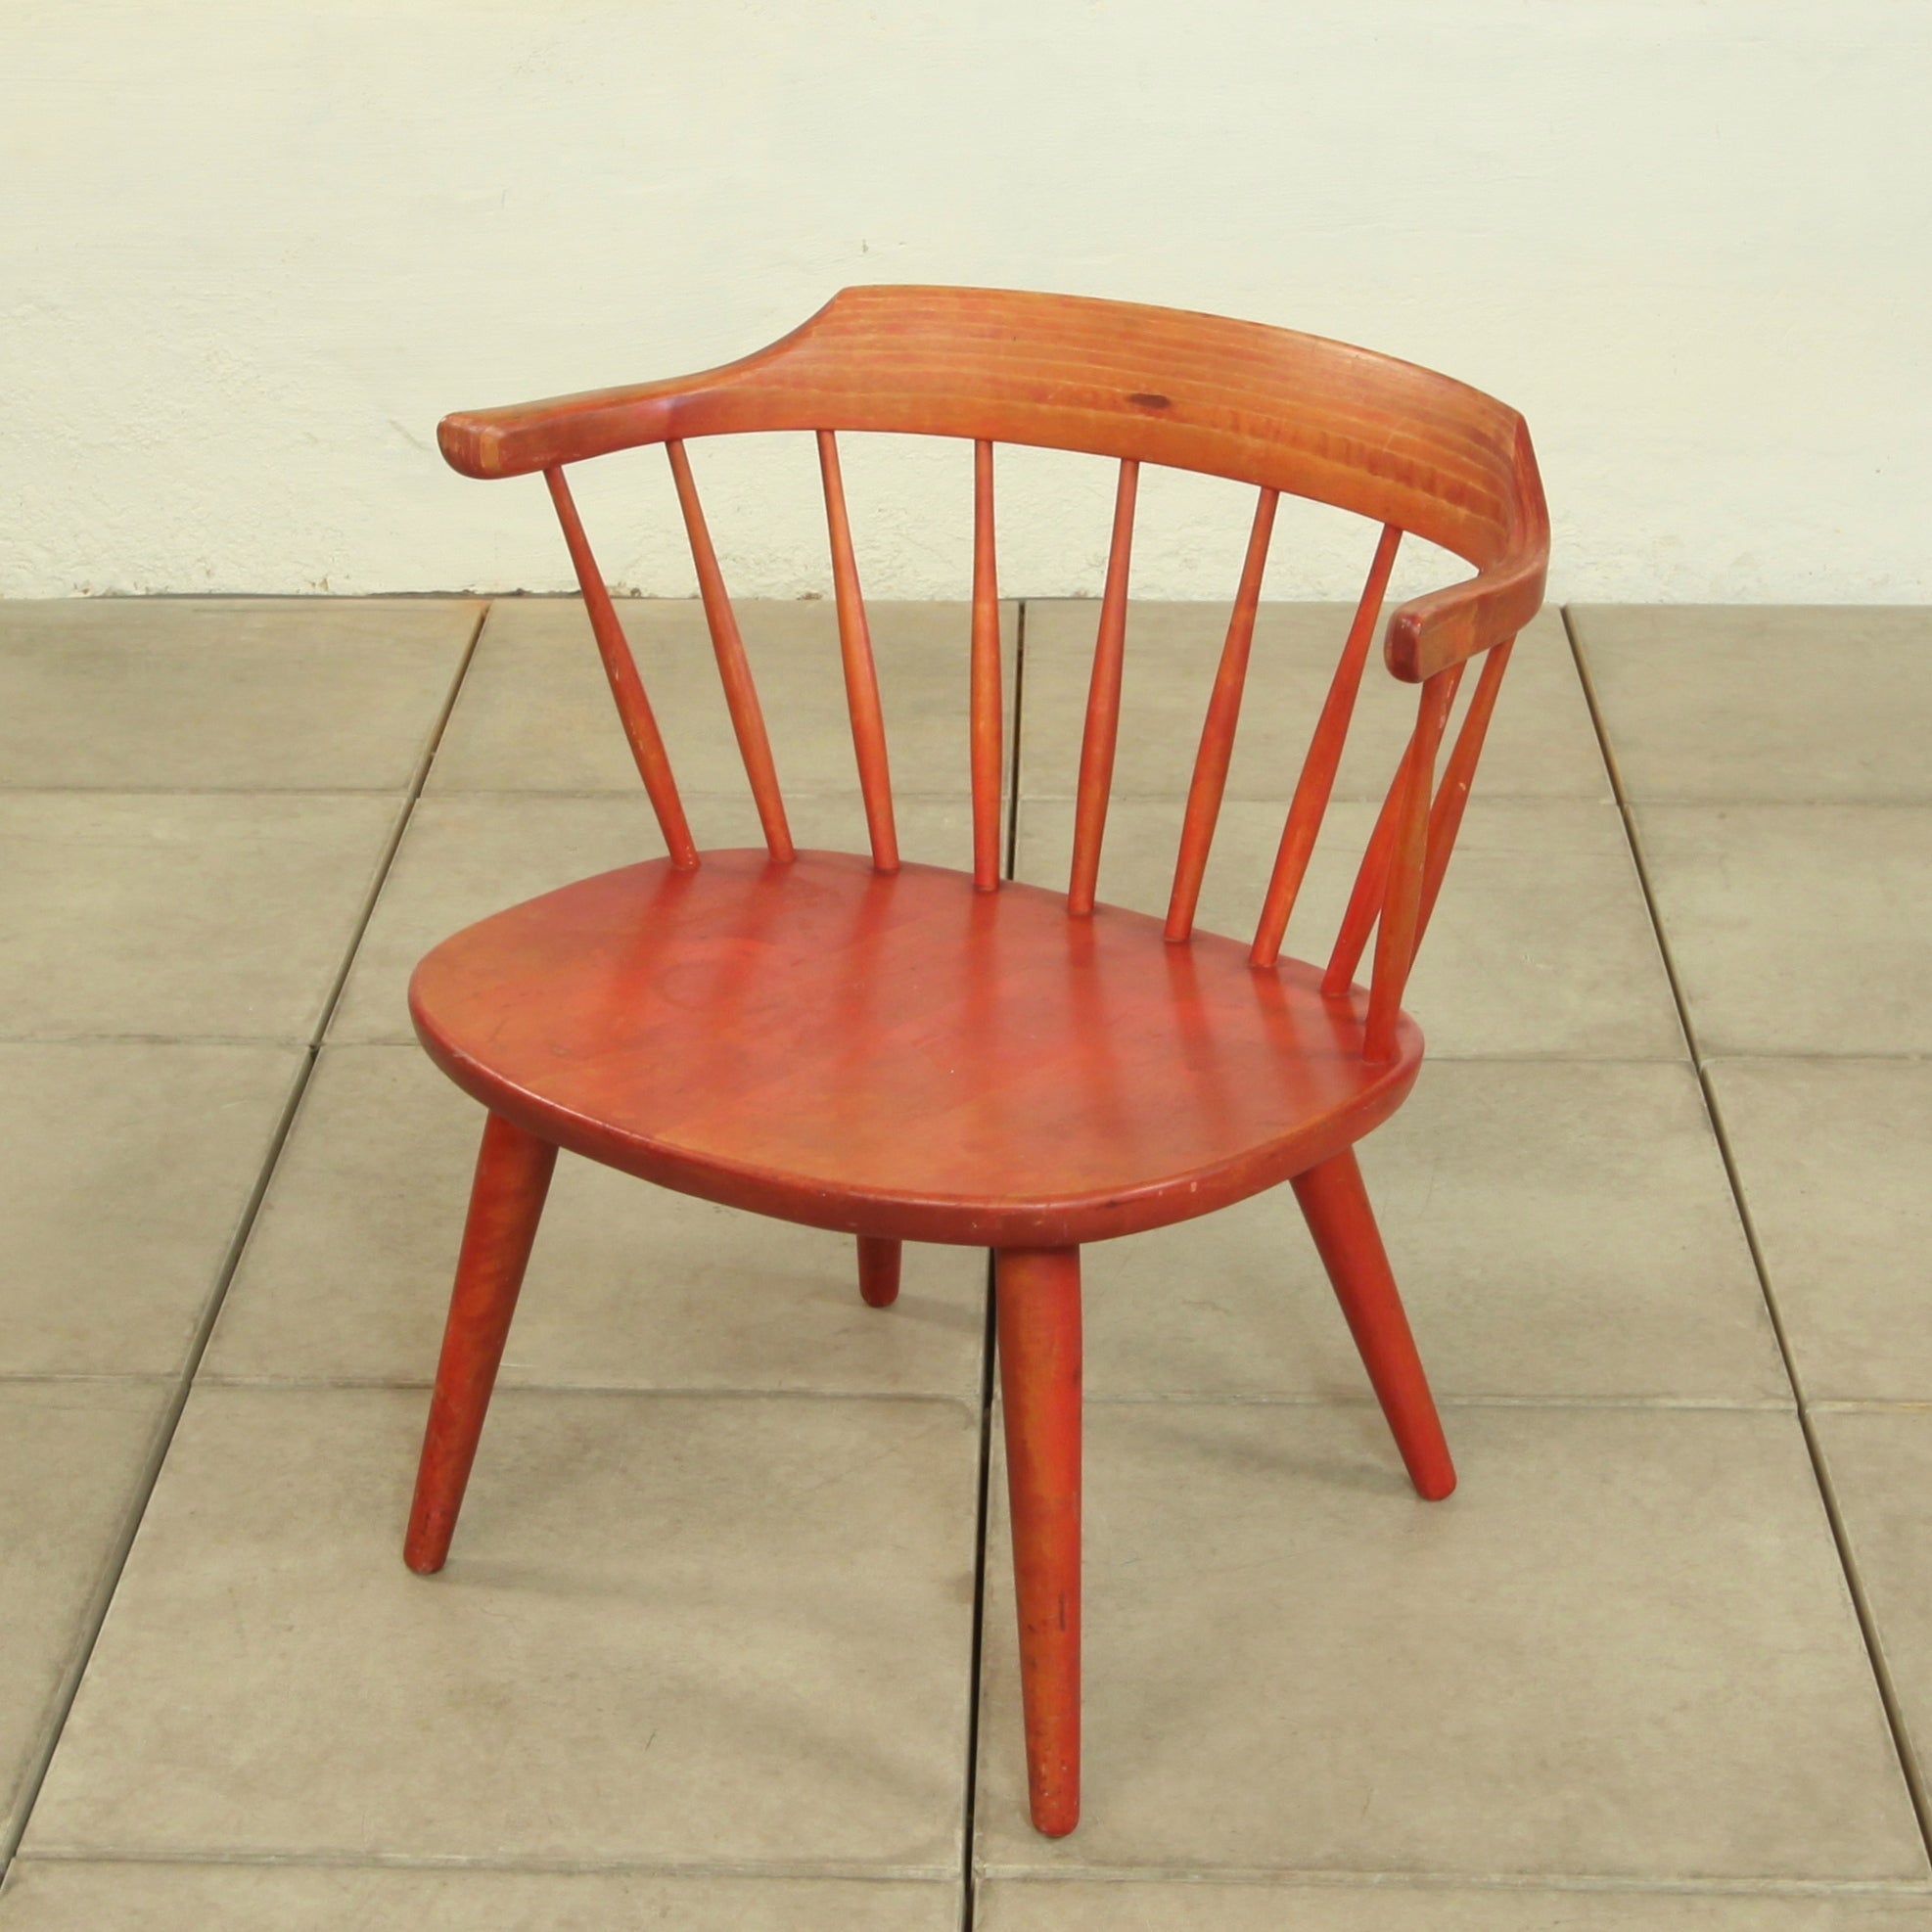 Vintage 1950's "Arka" Chair designed by Yngve Ekström for Stolab.